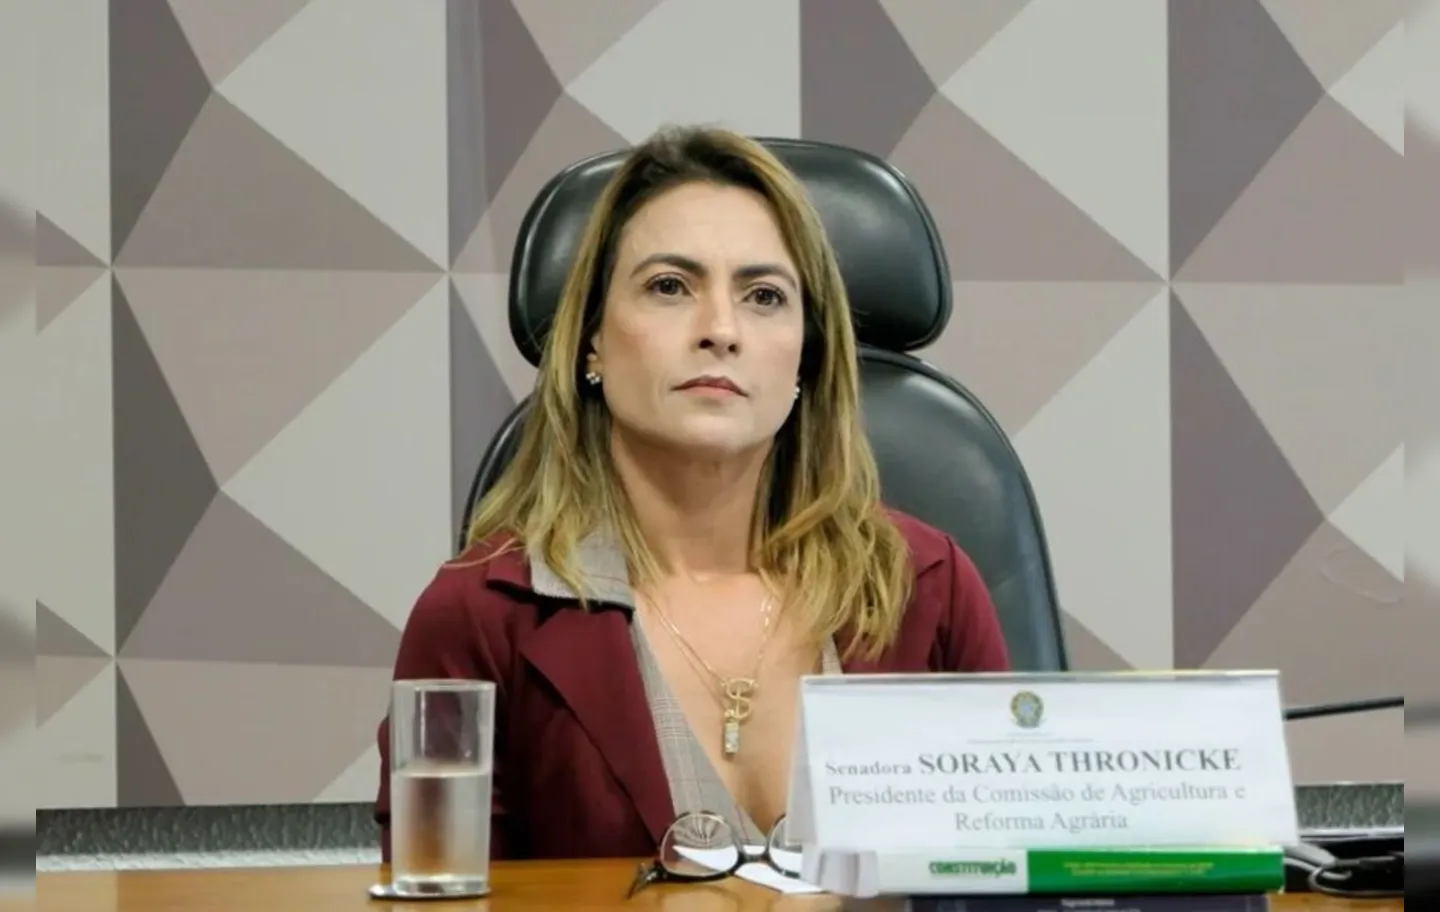 Soraya Thronicke foi eleita senadora do Mato Grosso do Sul em 2018, pelo PSL, na época em que apoiava Jair Bolsonaro